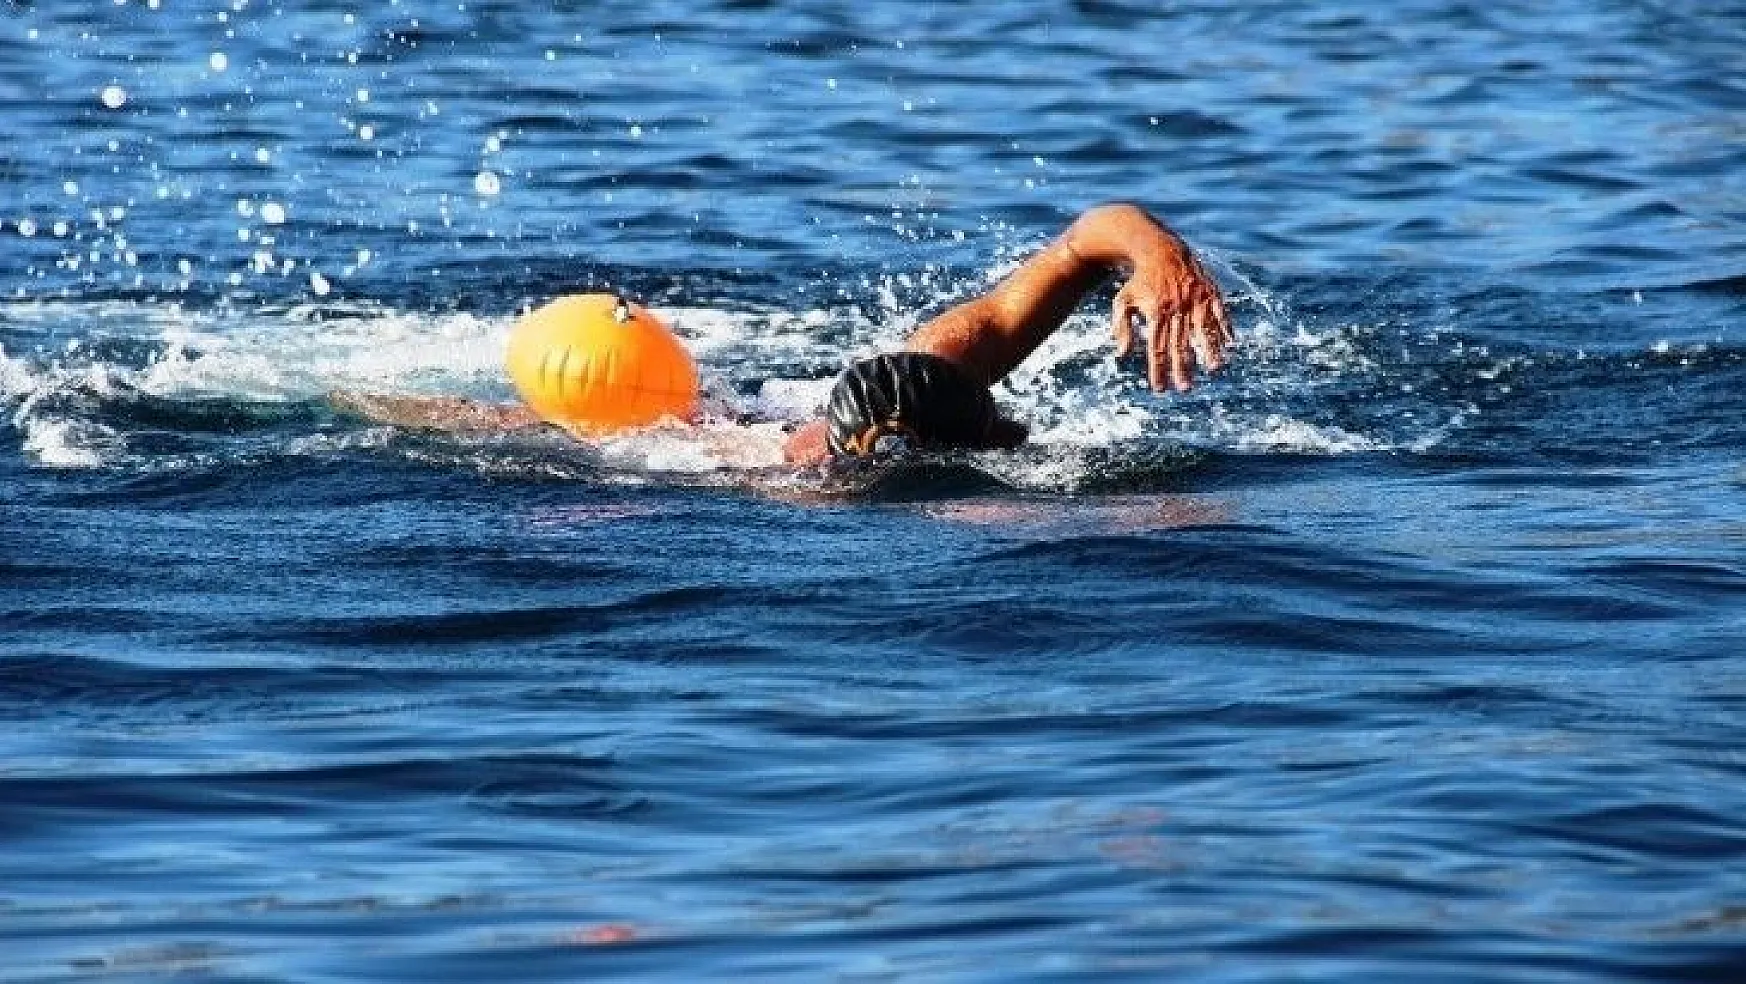 64 yaşındaki yüzücü 11 ayda 1 milyon metre kulaç attı